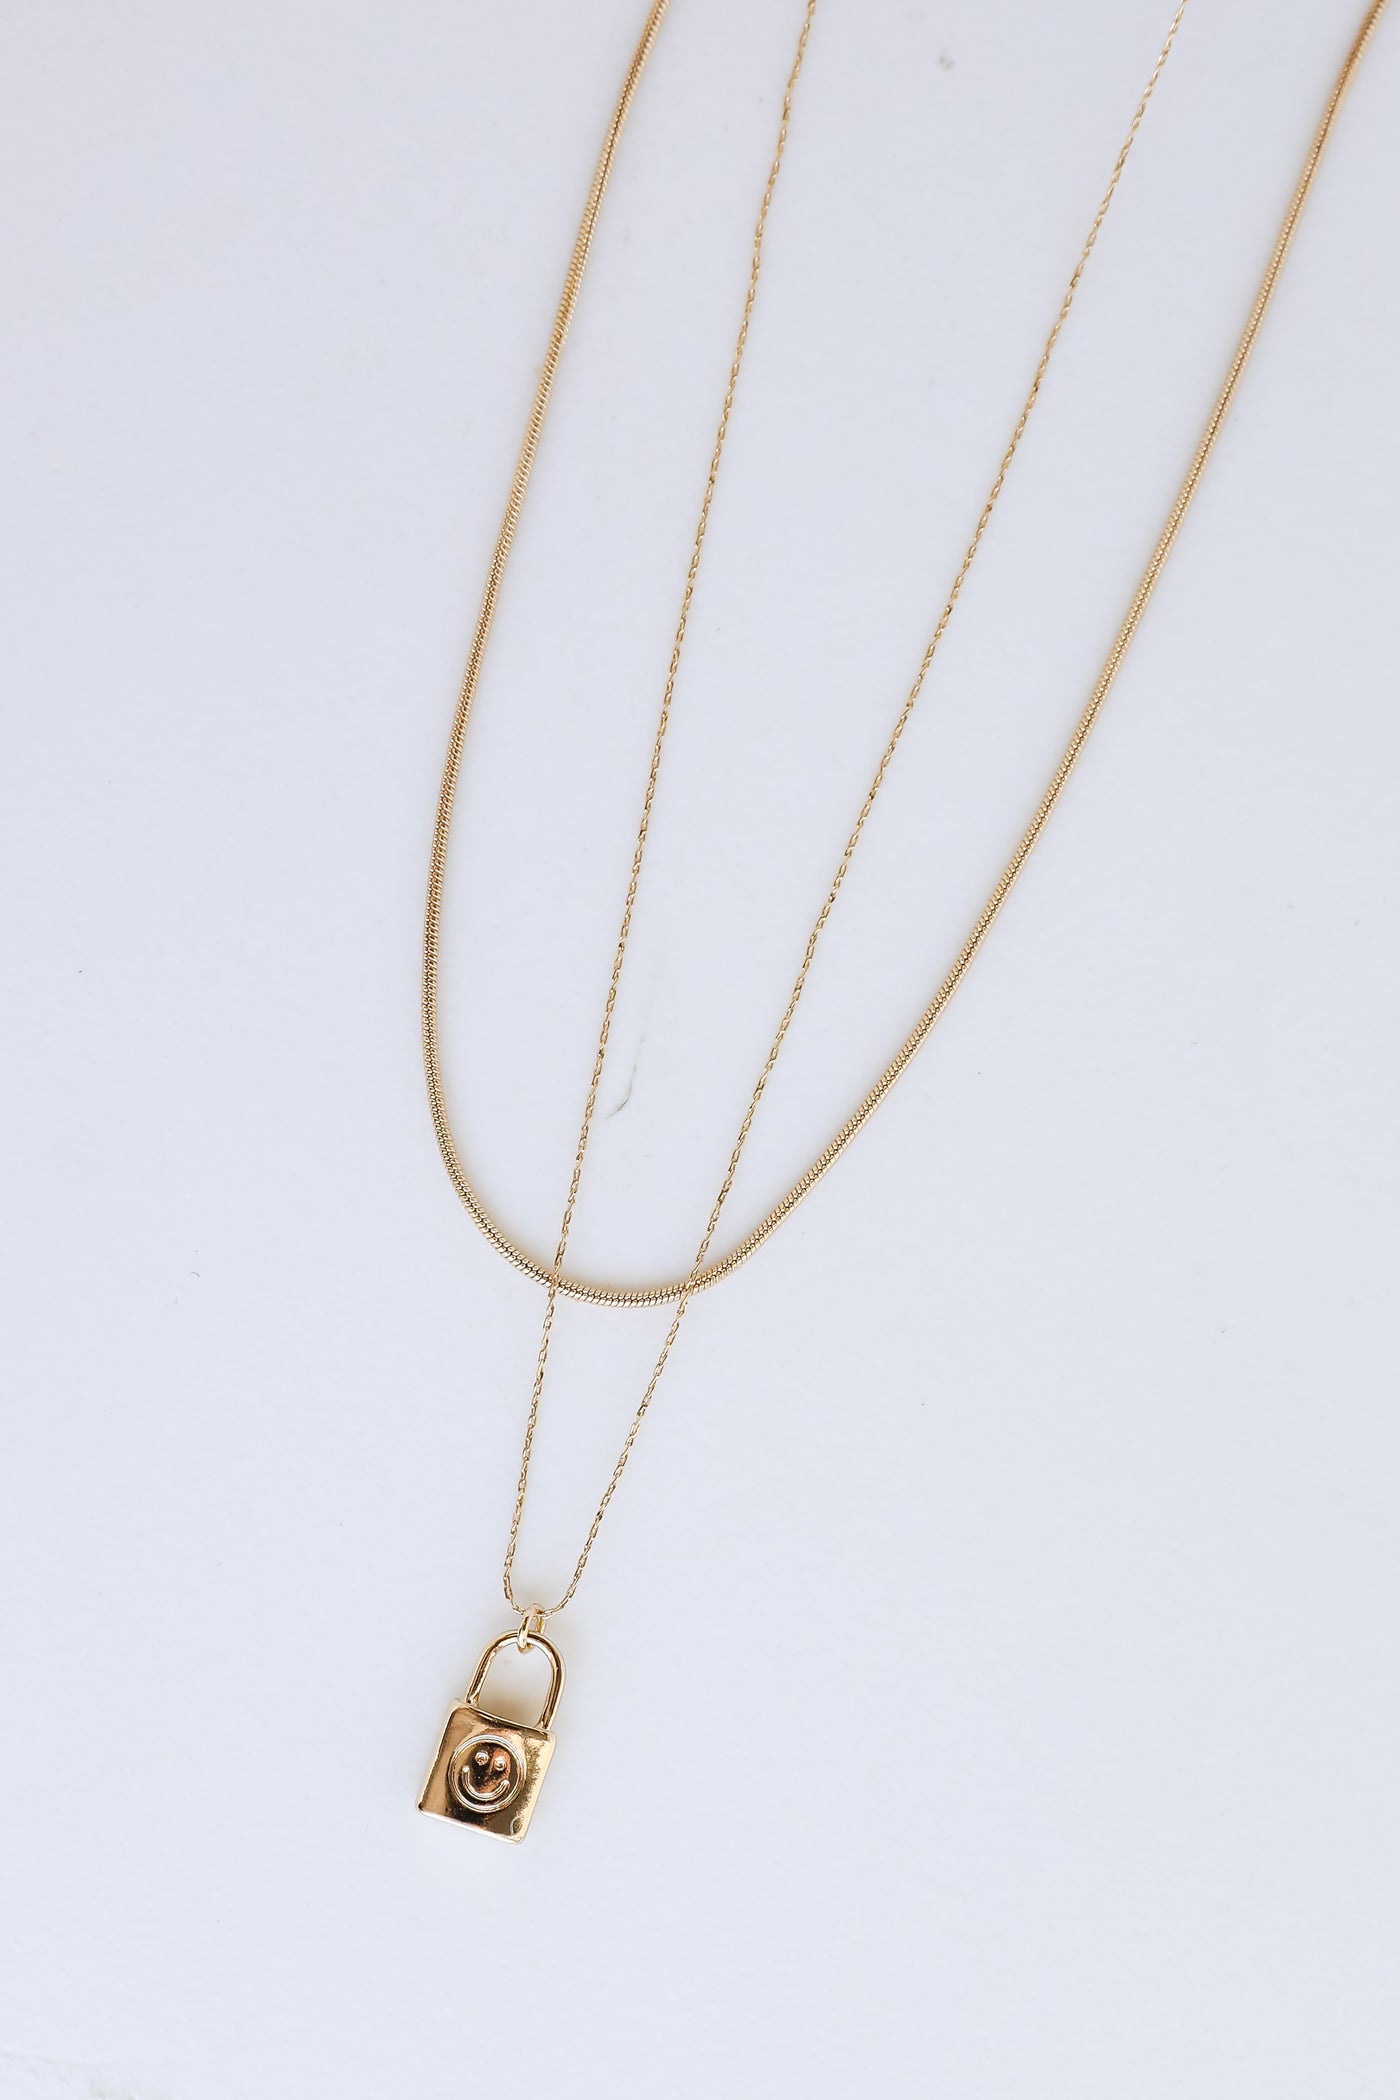 Gold Padlock Layered Necklace close up